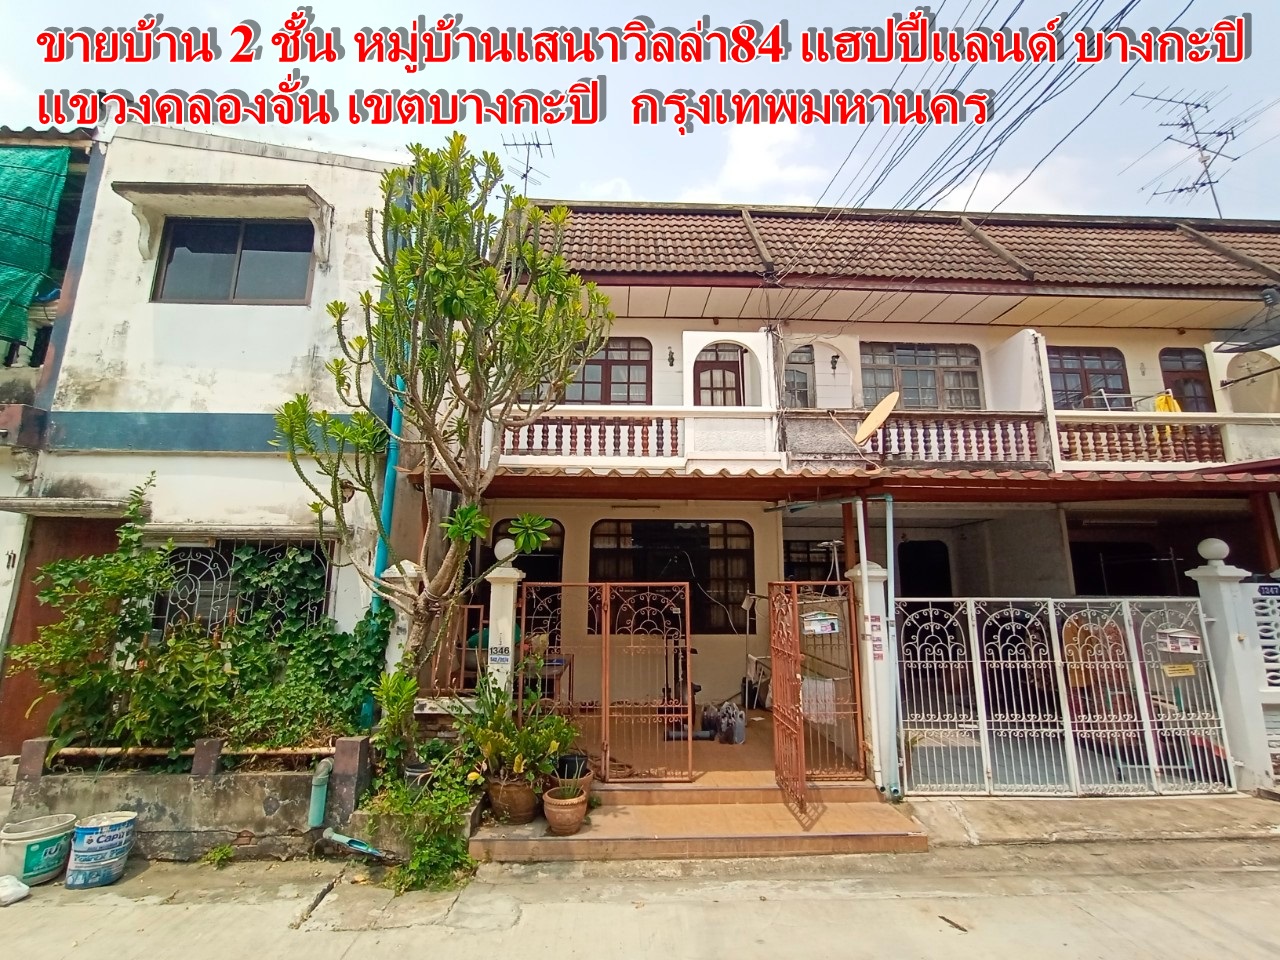 Sena Villa 84 Village, Happyland, Bangkapi 2层独立屋出售